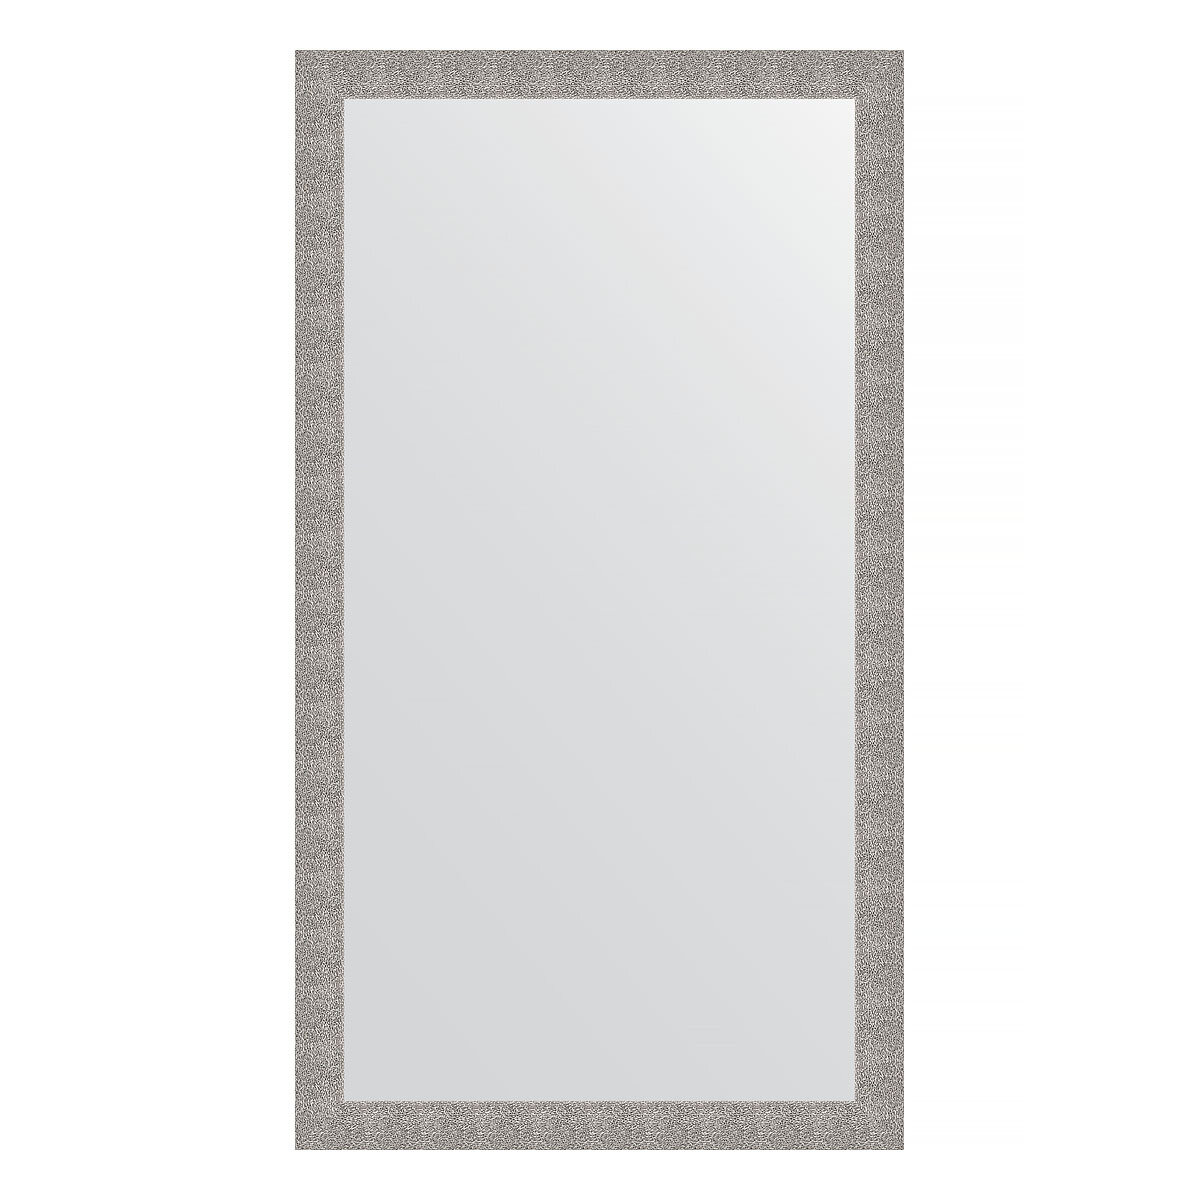 Зеркало напольное EVOFORM в багетной раме чеканка серебряная, 111х201 см, для гостиной, прихожей, кабинета, спальни и ванной комнаты, BY 6021